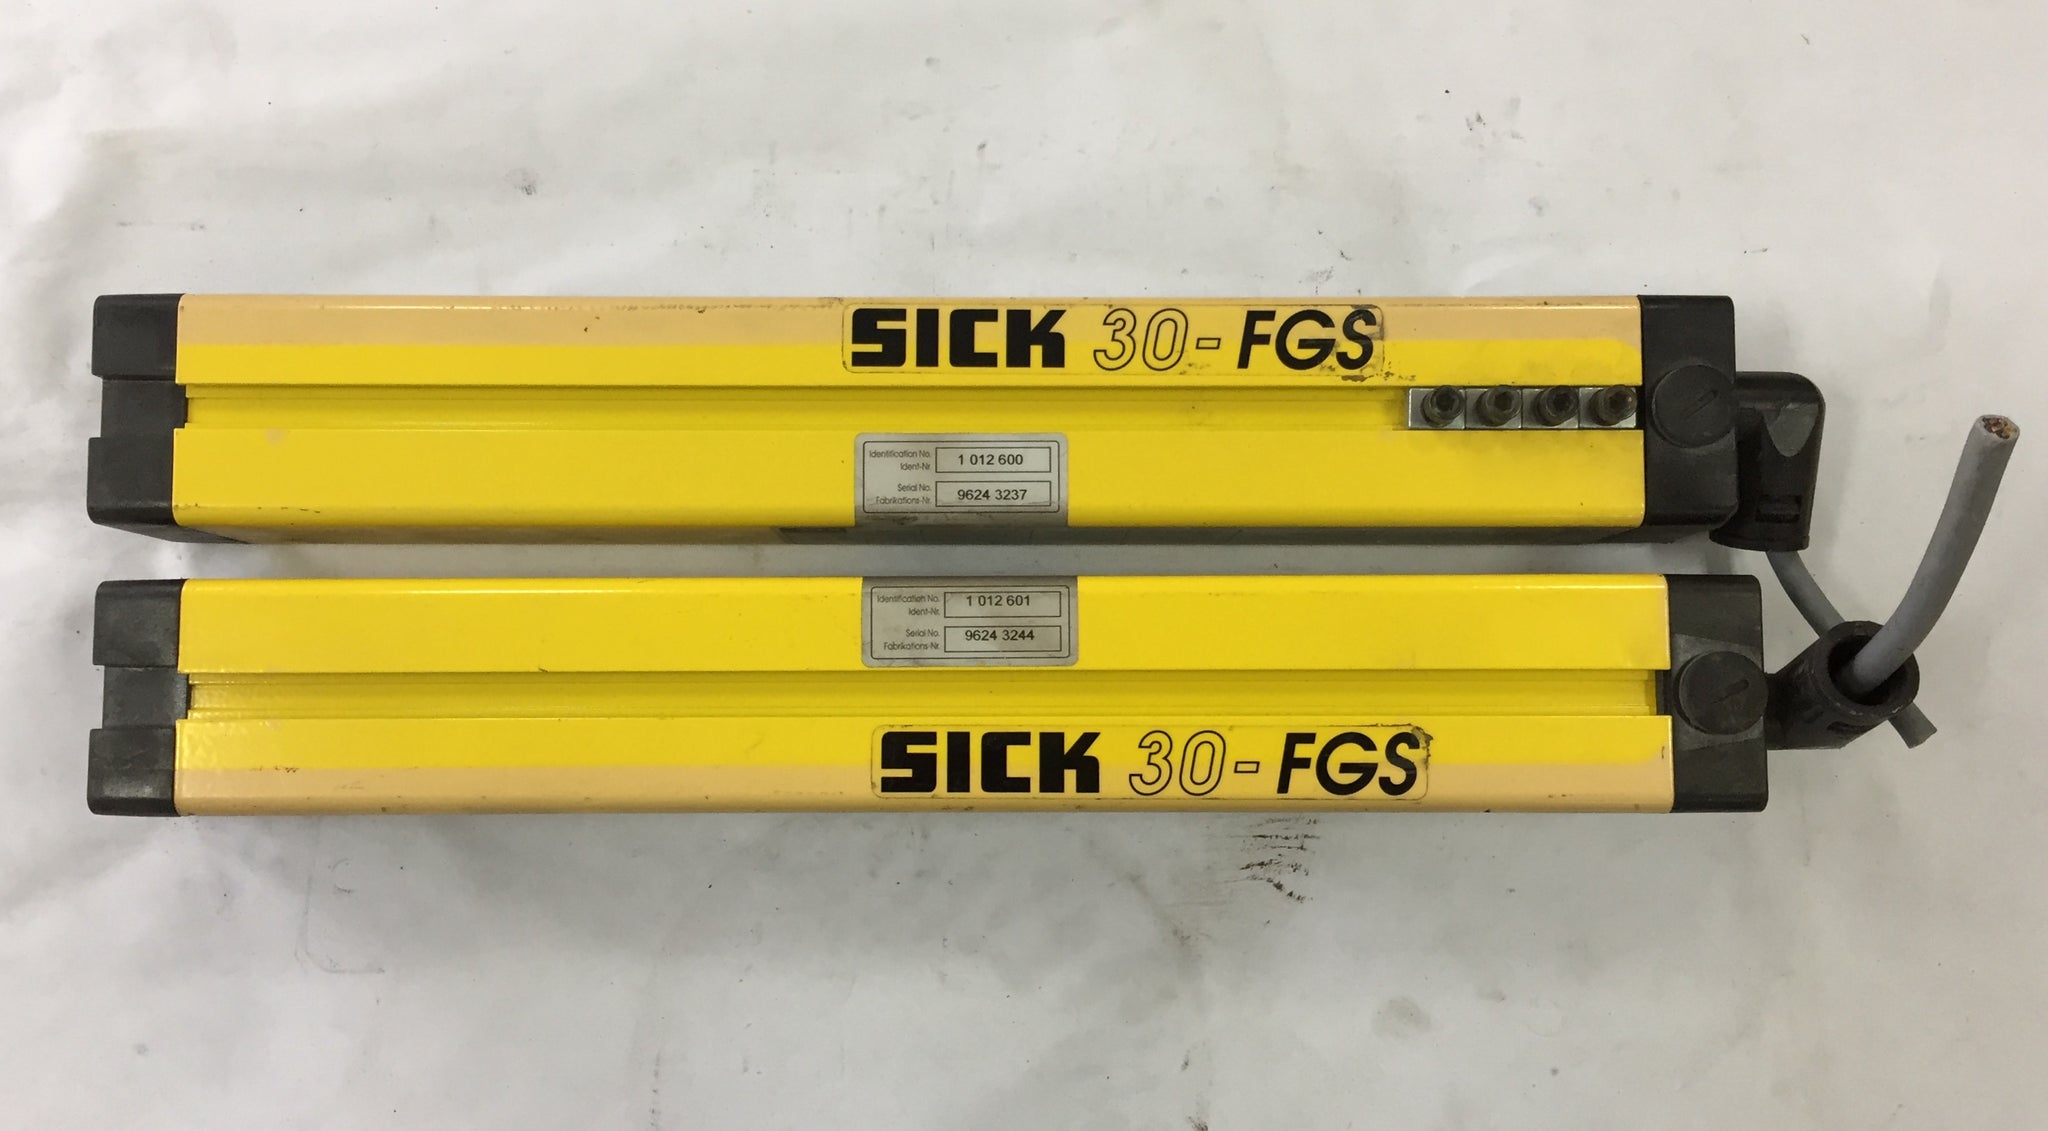 SICK 30-FGS